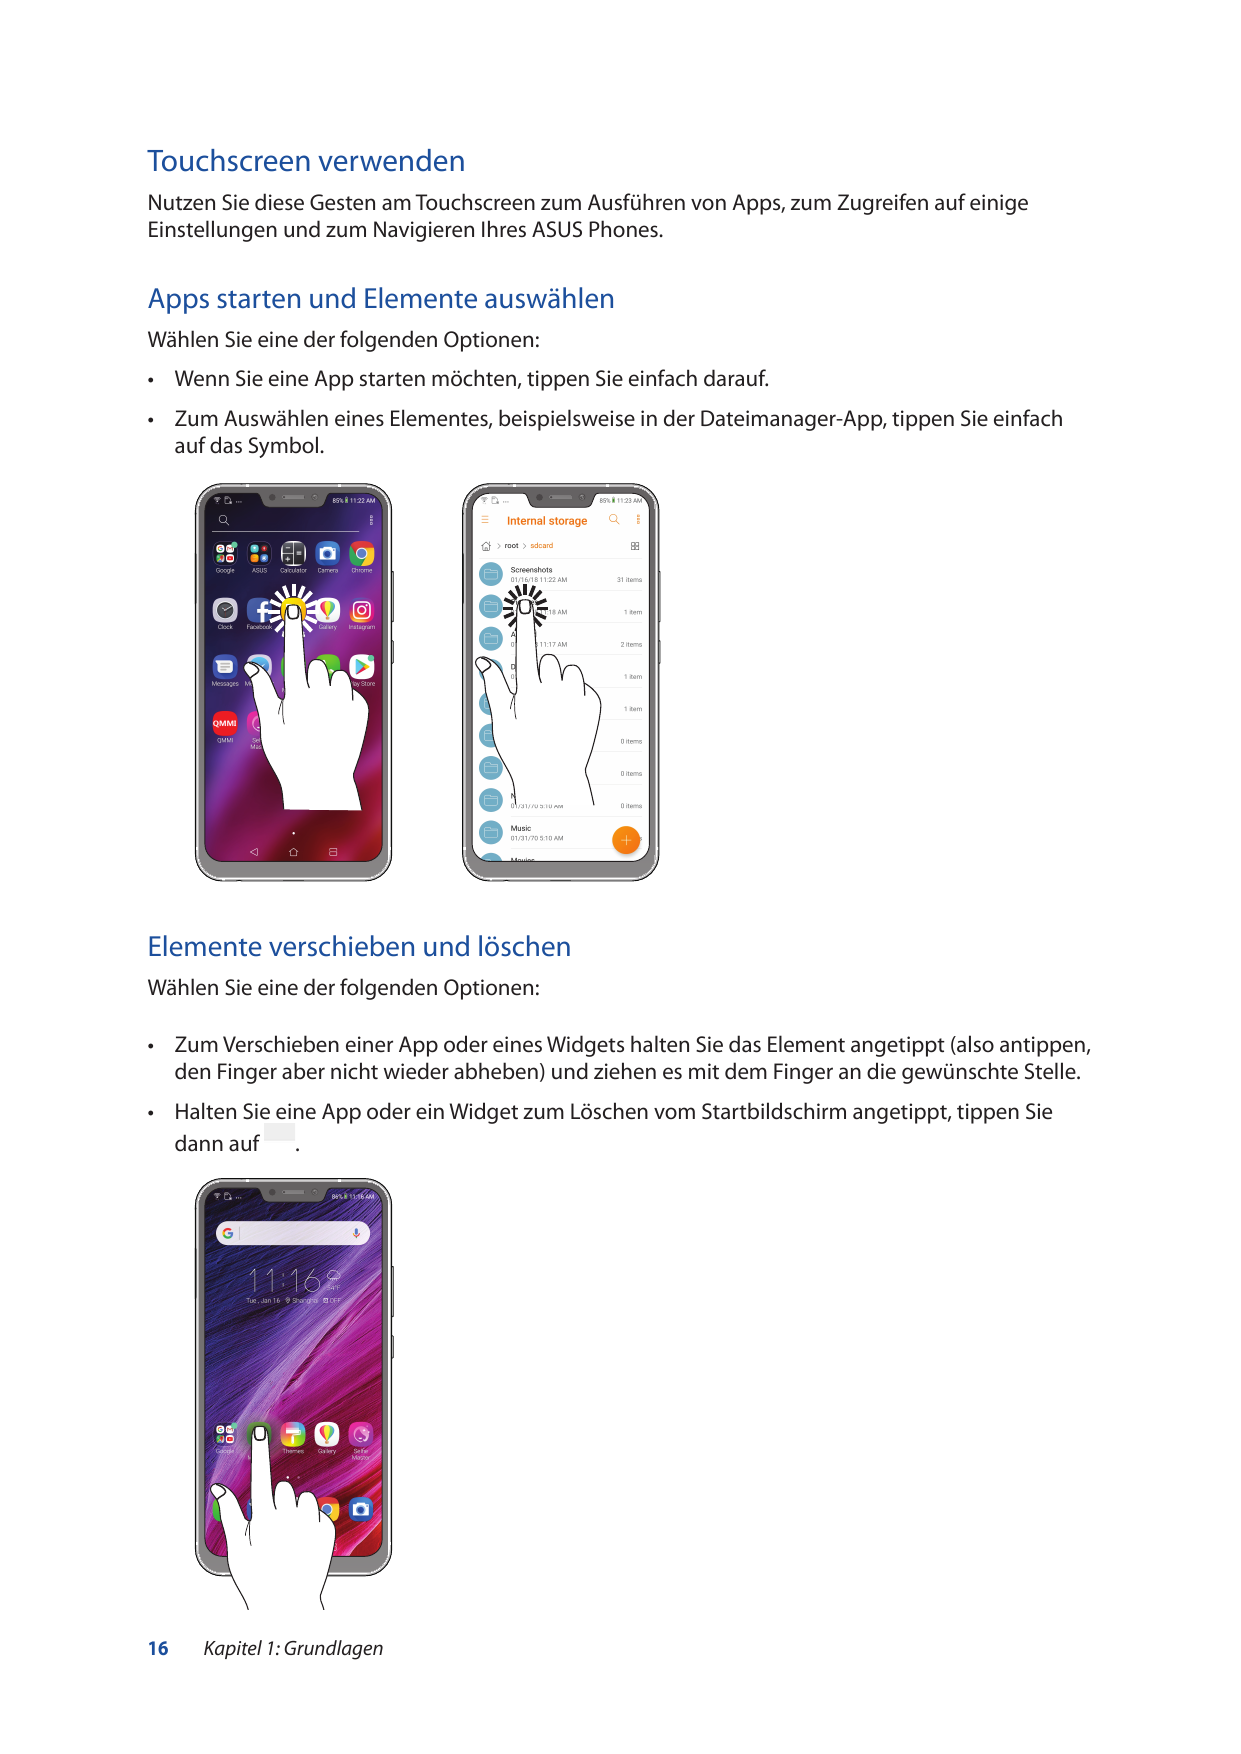 Touchscreen verwendenNutzen Sie diese Gesten am Touchscreen zum Ausführen von Apps, zum Zugreifen auf einigeEinstellungen und zu